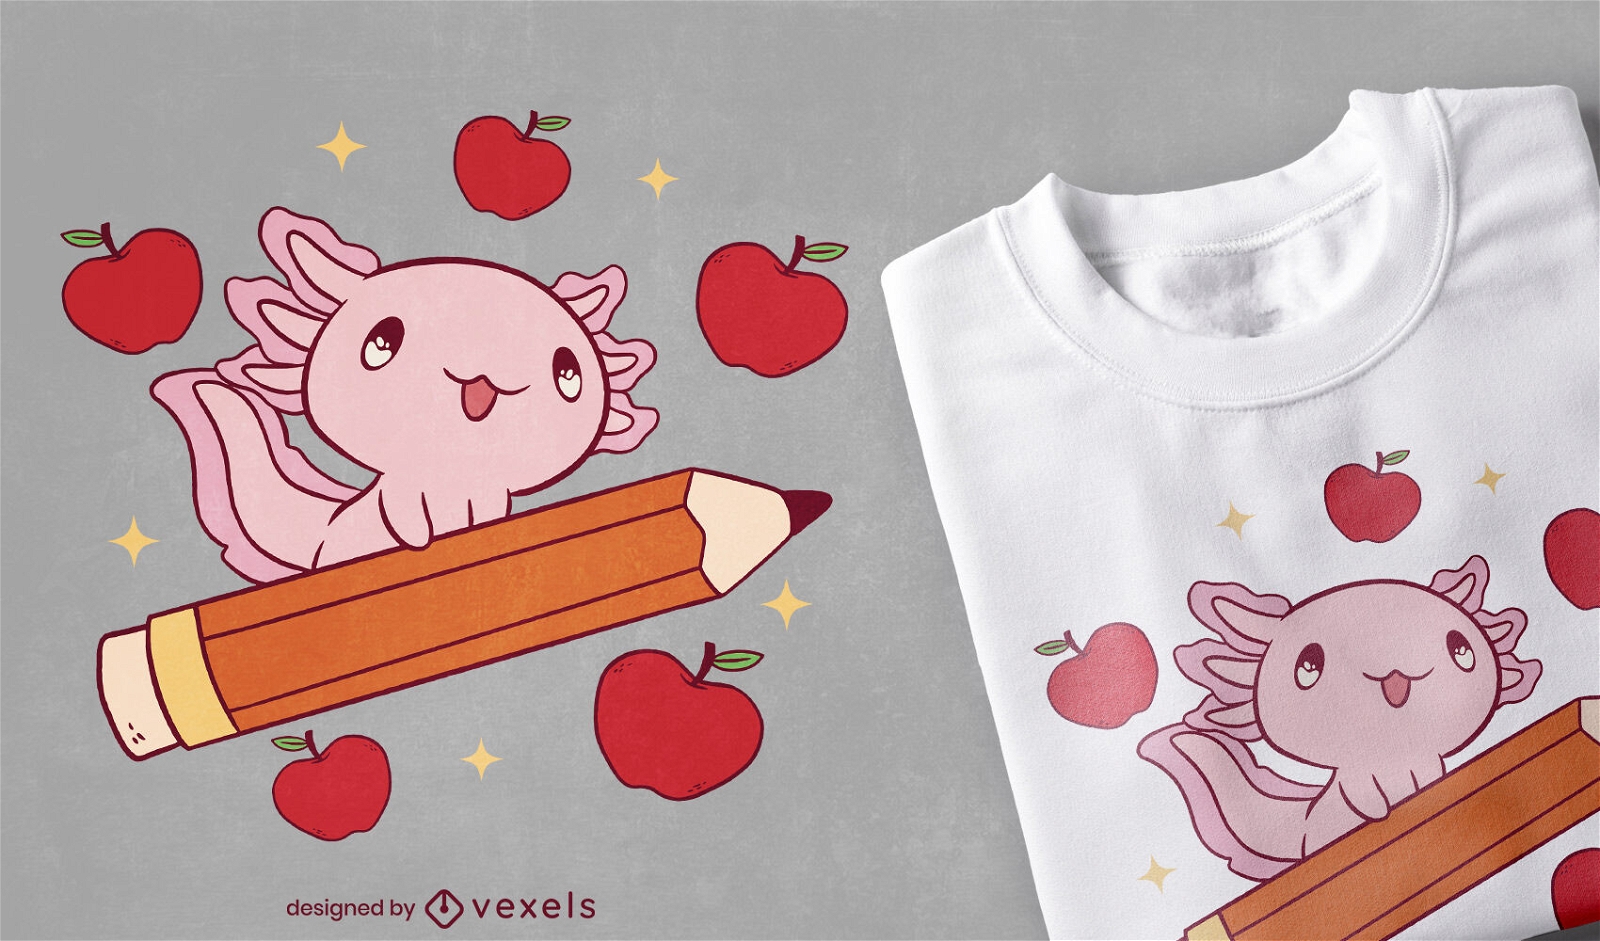 Axolotl de beb? no design de t-shirt de l?pis